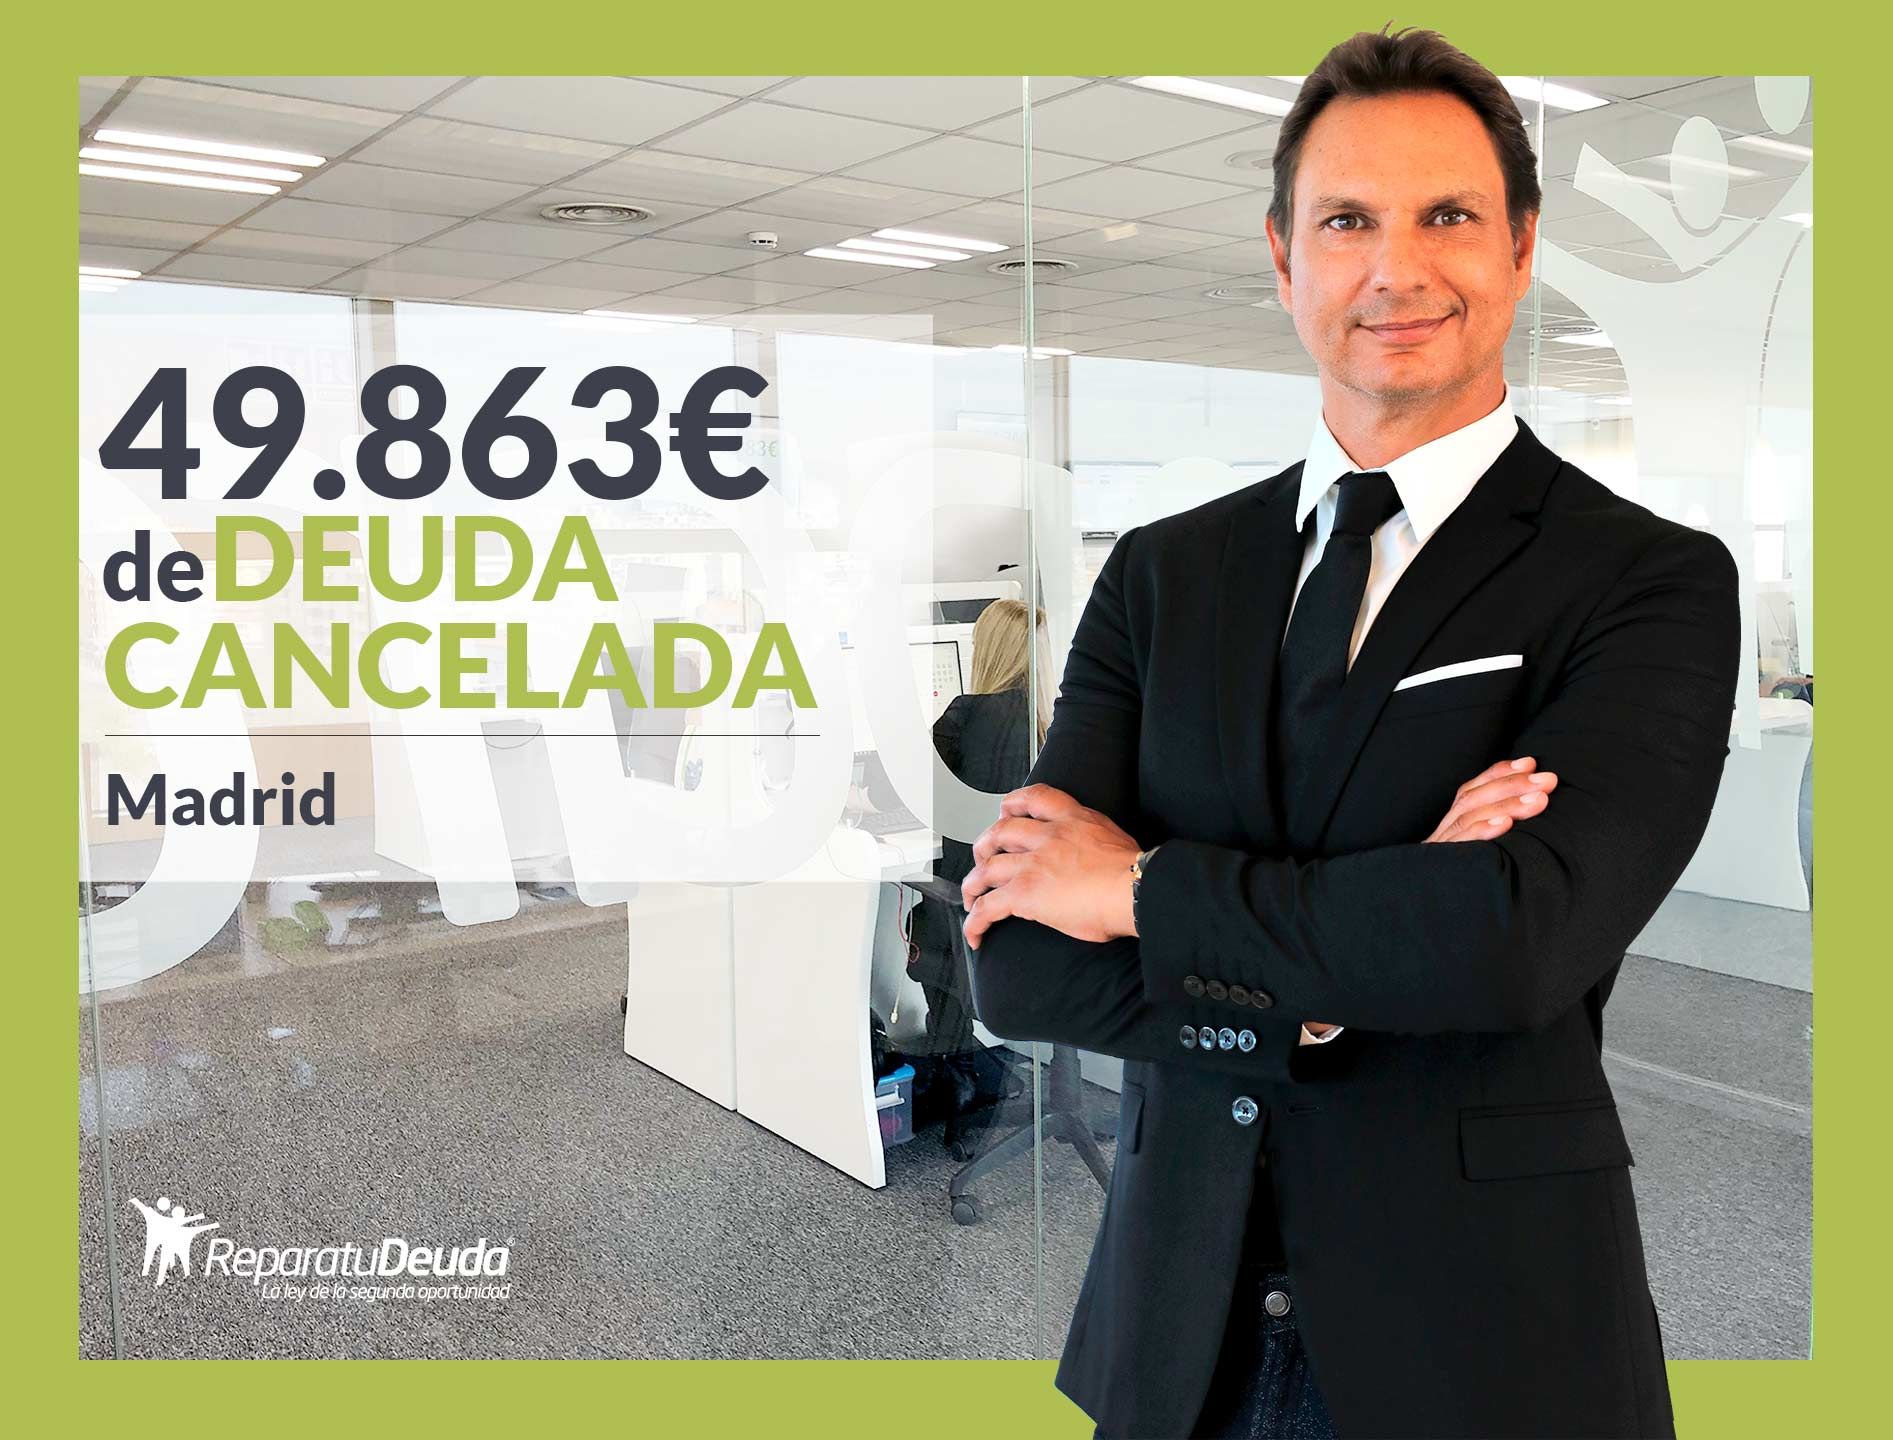 Repara tu Deuda Abogados cancela 49.863? en Madrid con la Ley de la Segunda Oportunidad